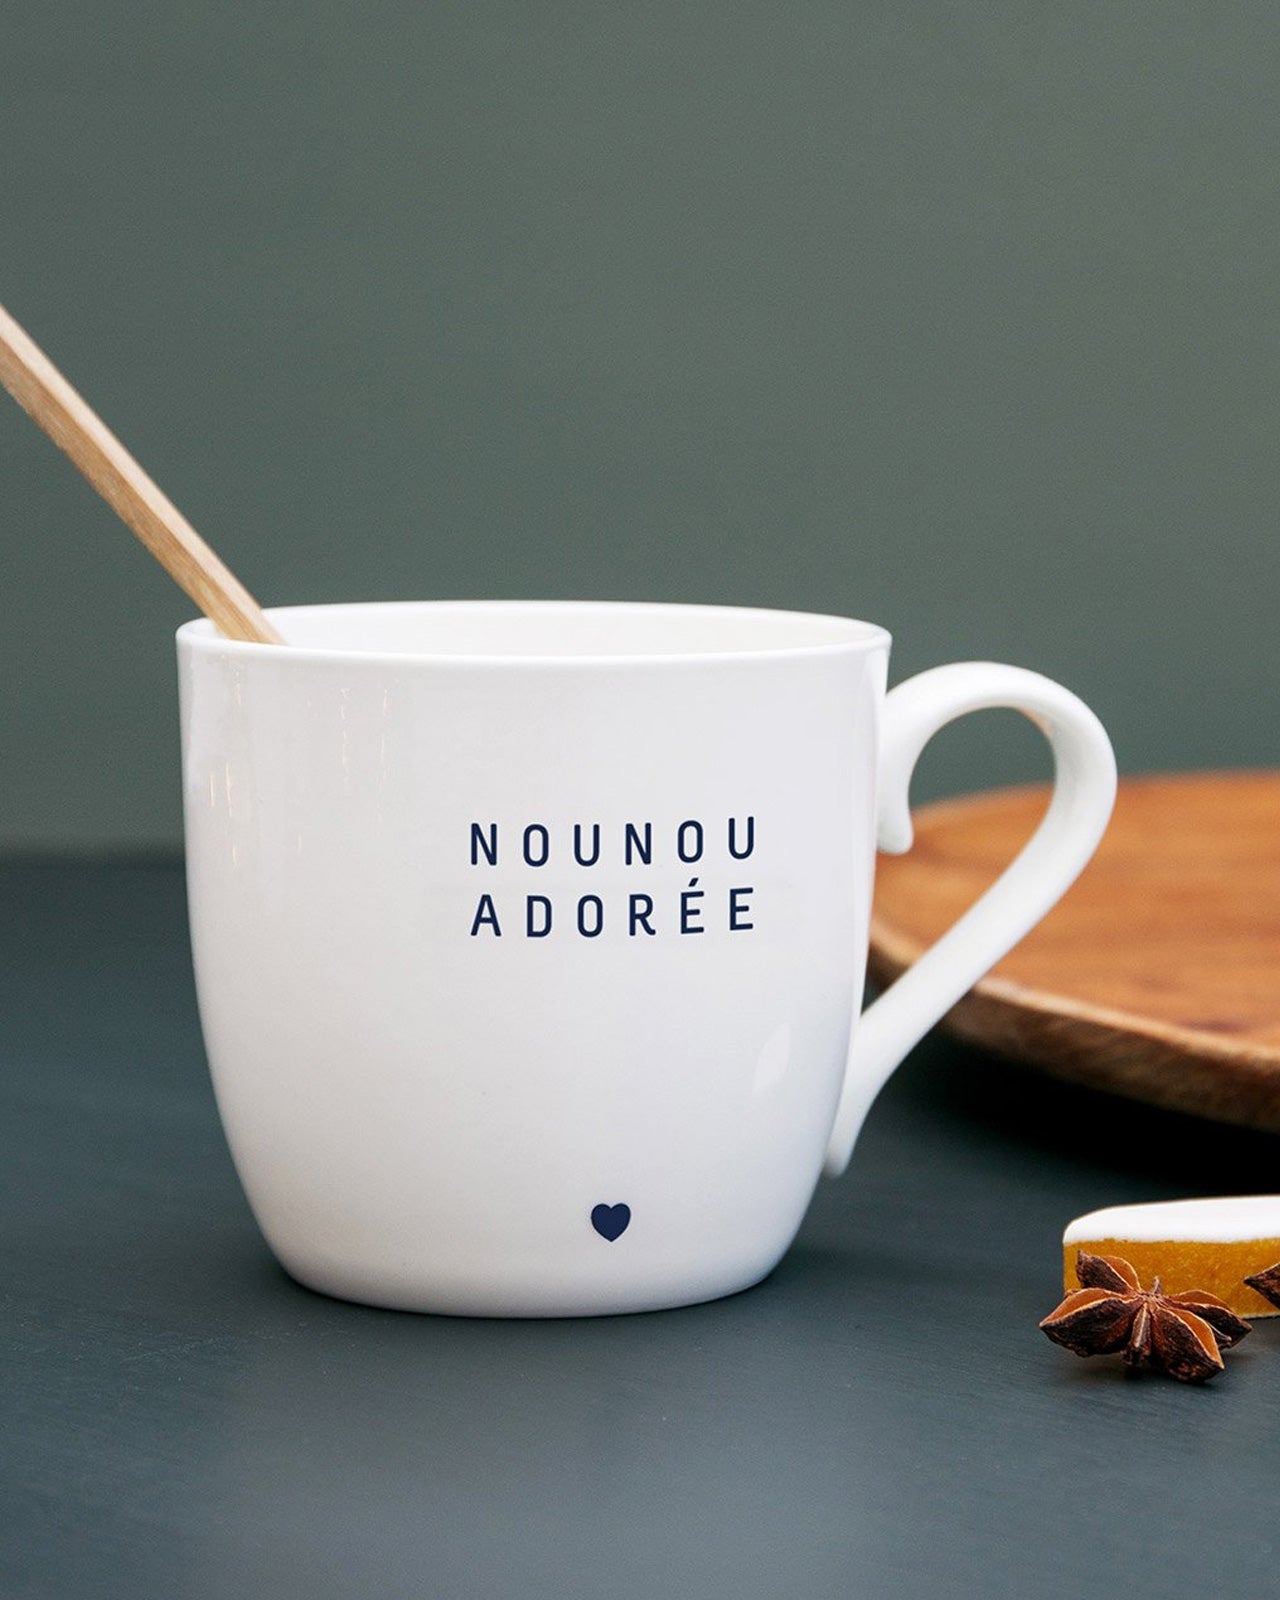 Le mug Nounou adorée